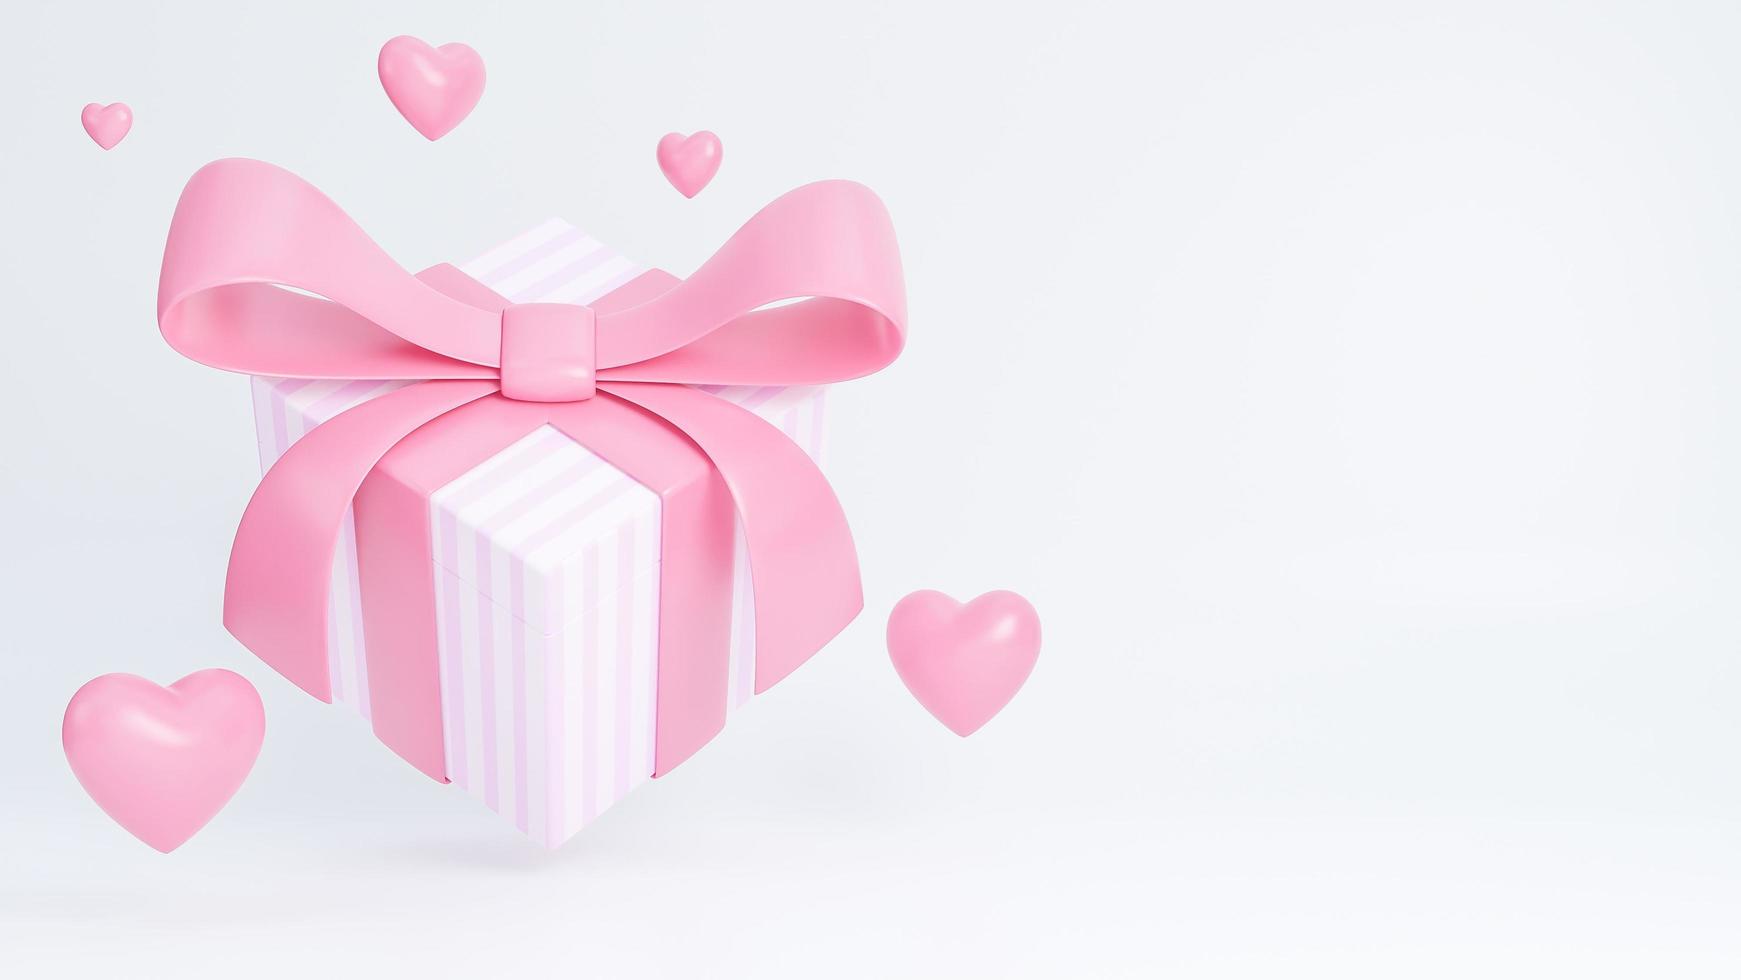 happy valentine day banner met geschenkdoos en harten 3D-objecten op roze achtergrond., 3D-model en illustratie. foto